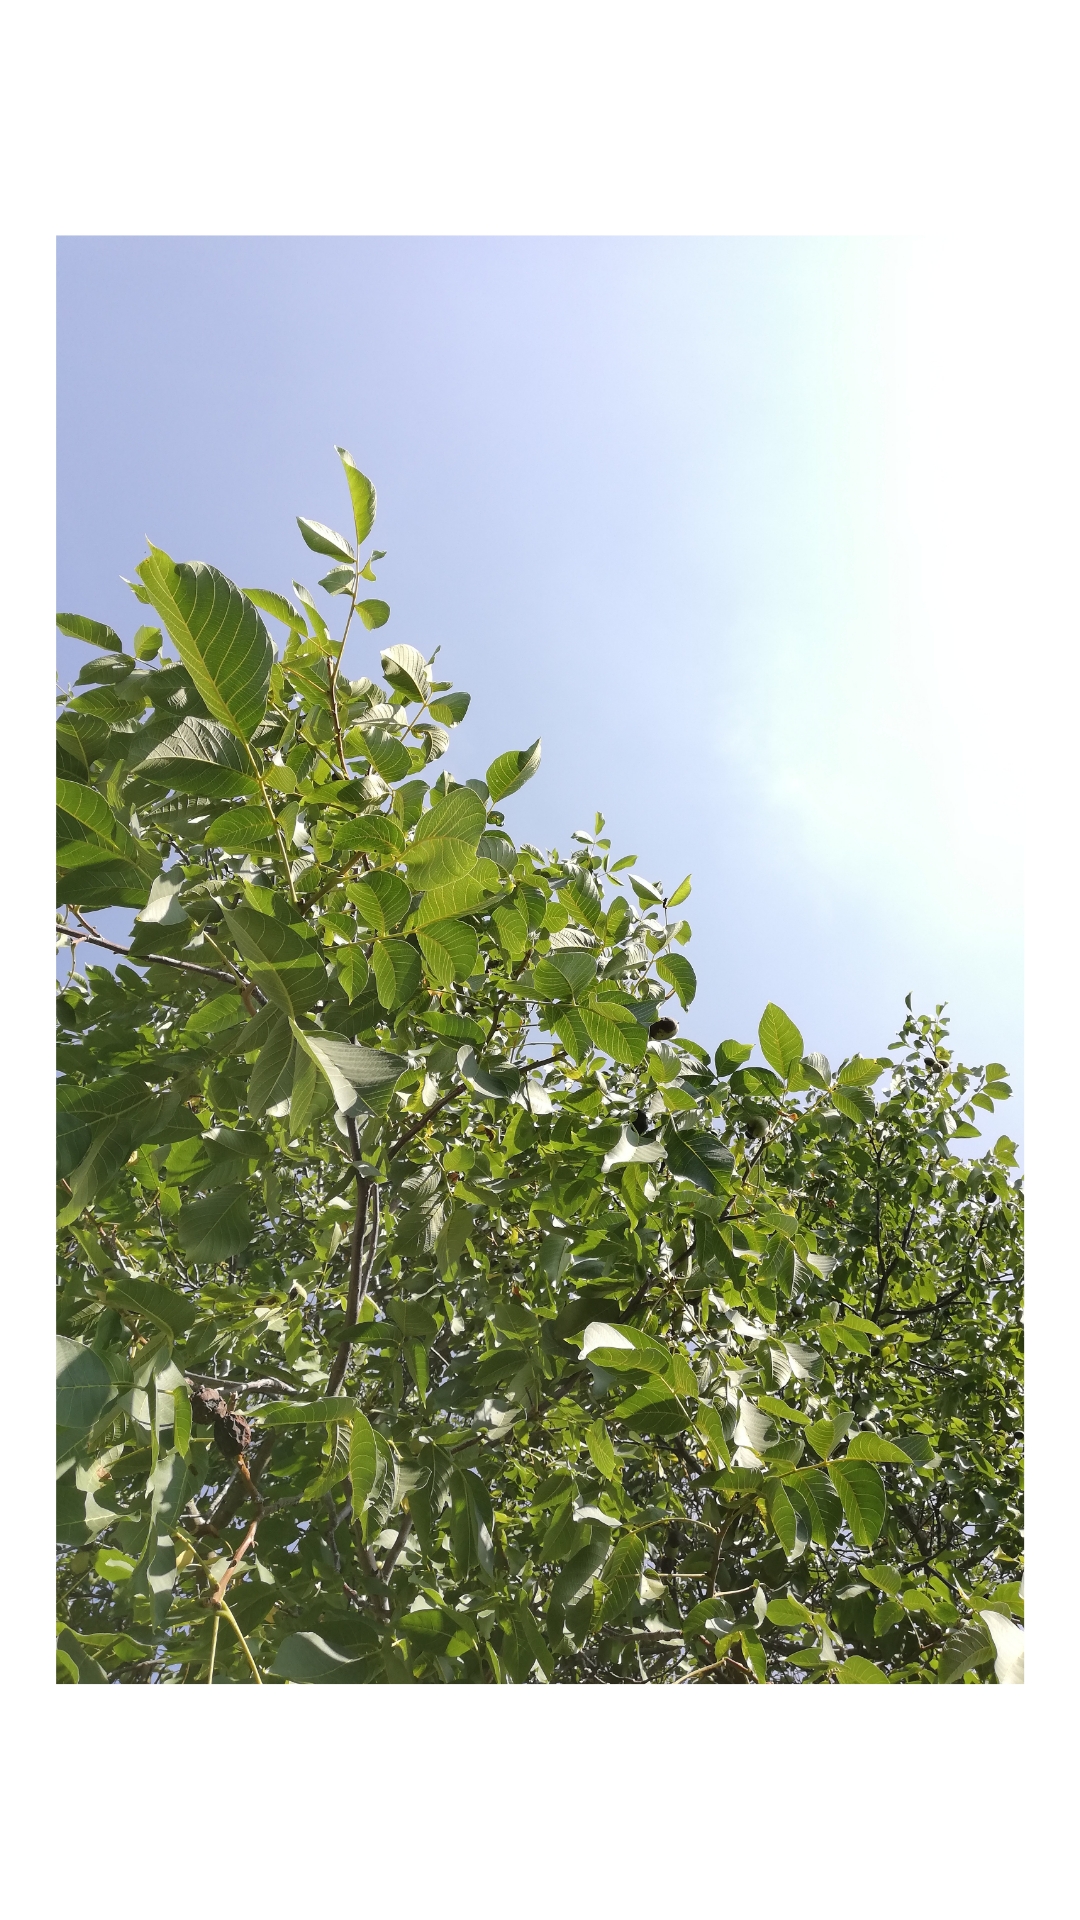 You can find me under the walnut tree #weekend #greenality #zuhausesein #heimat #pflanzenreich #natur #familienzeit 